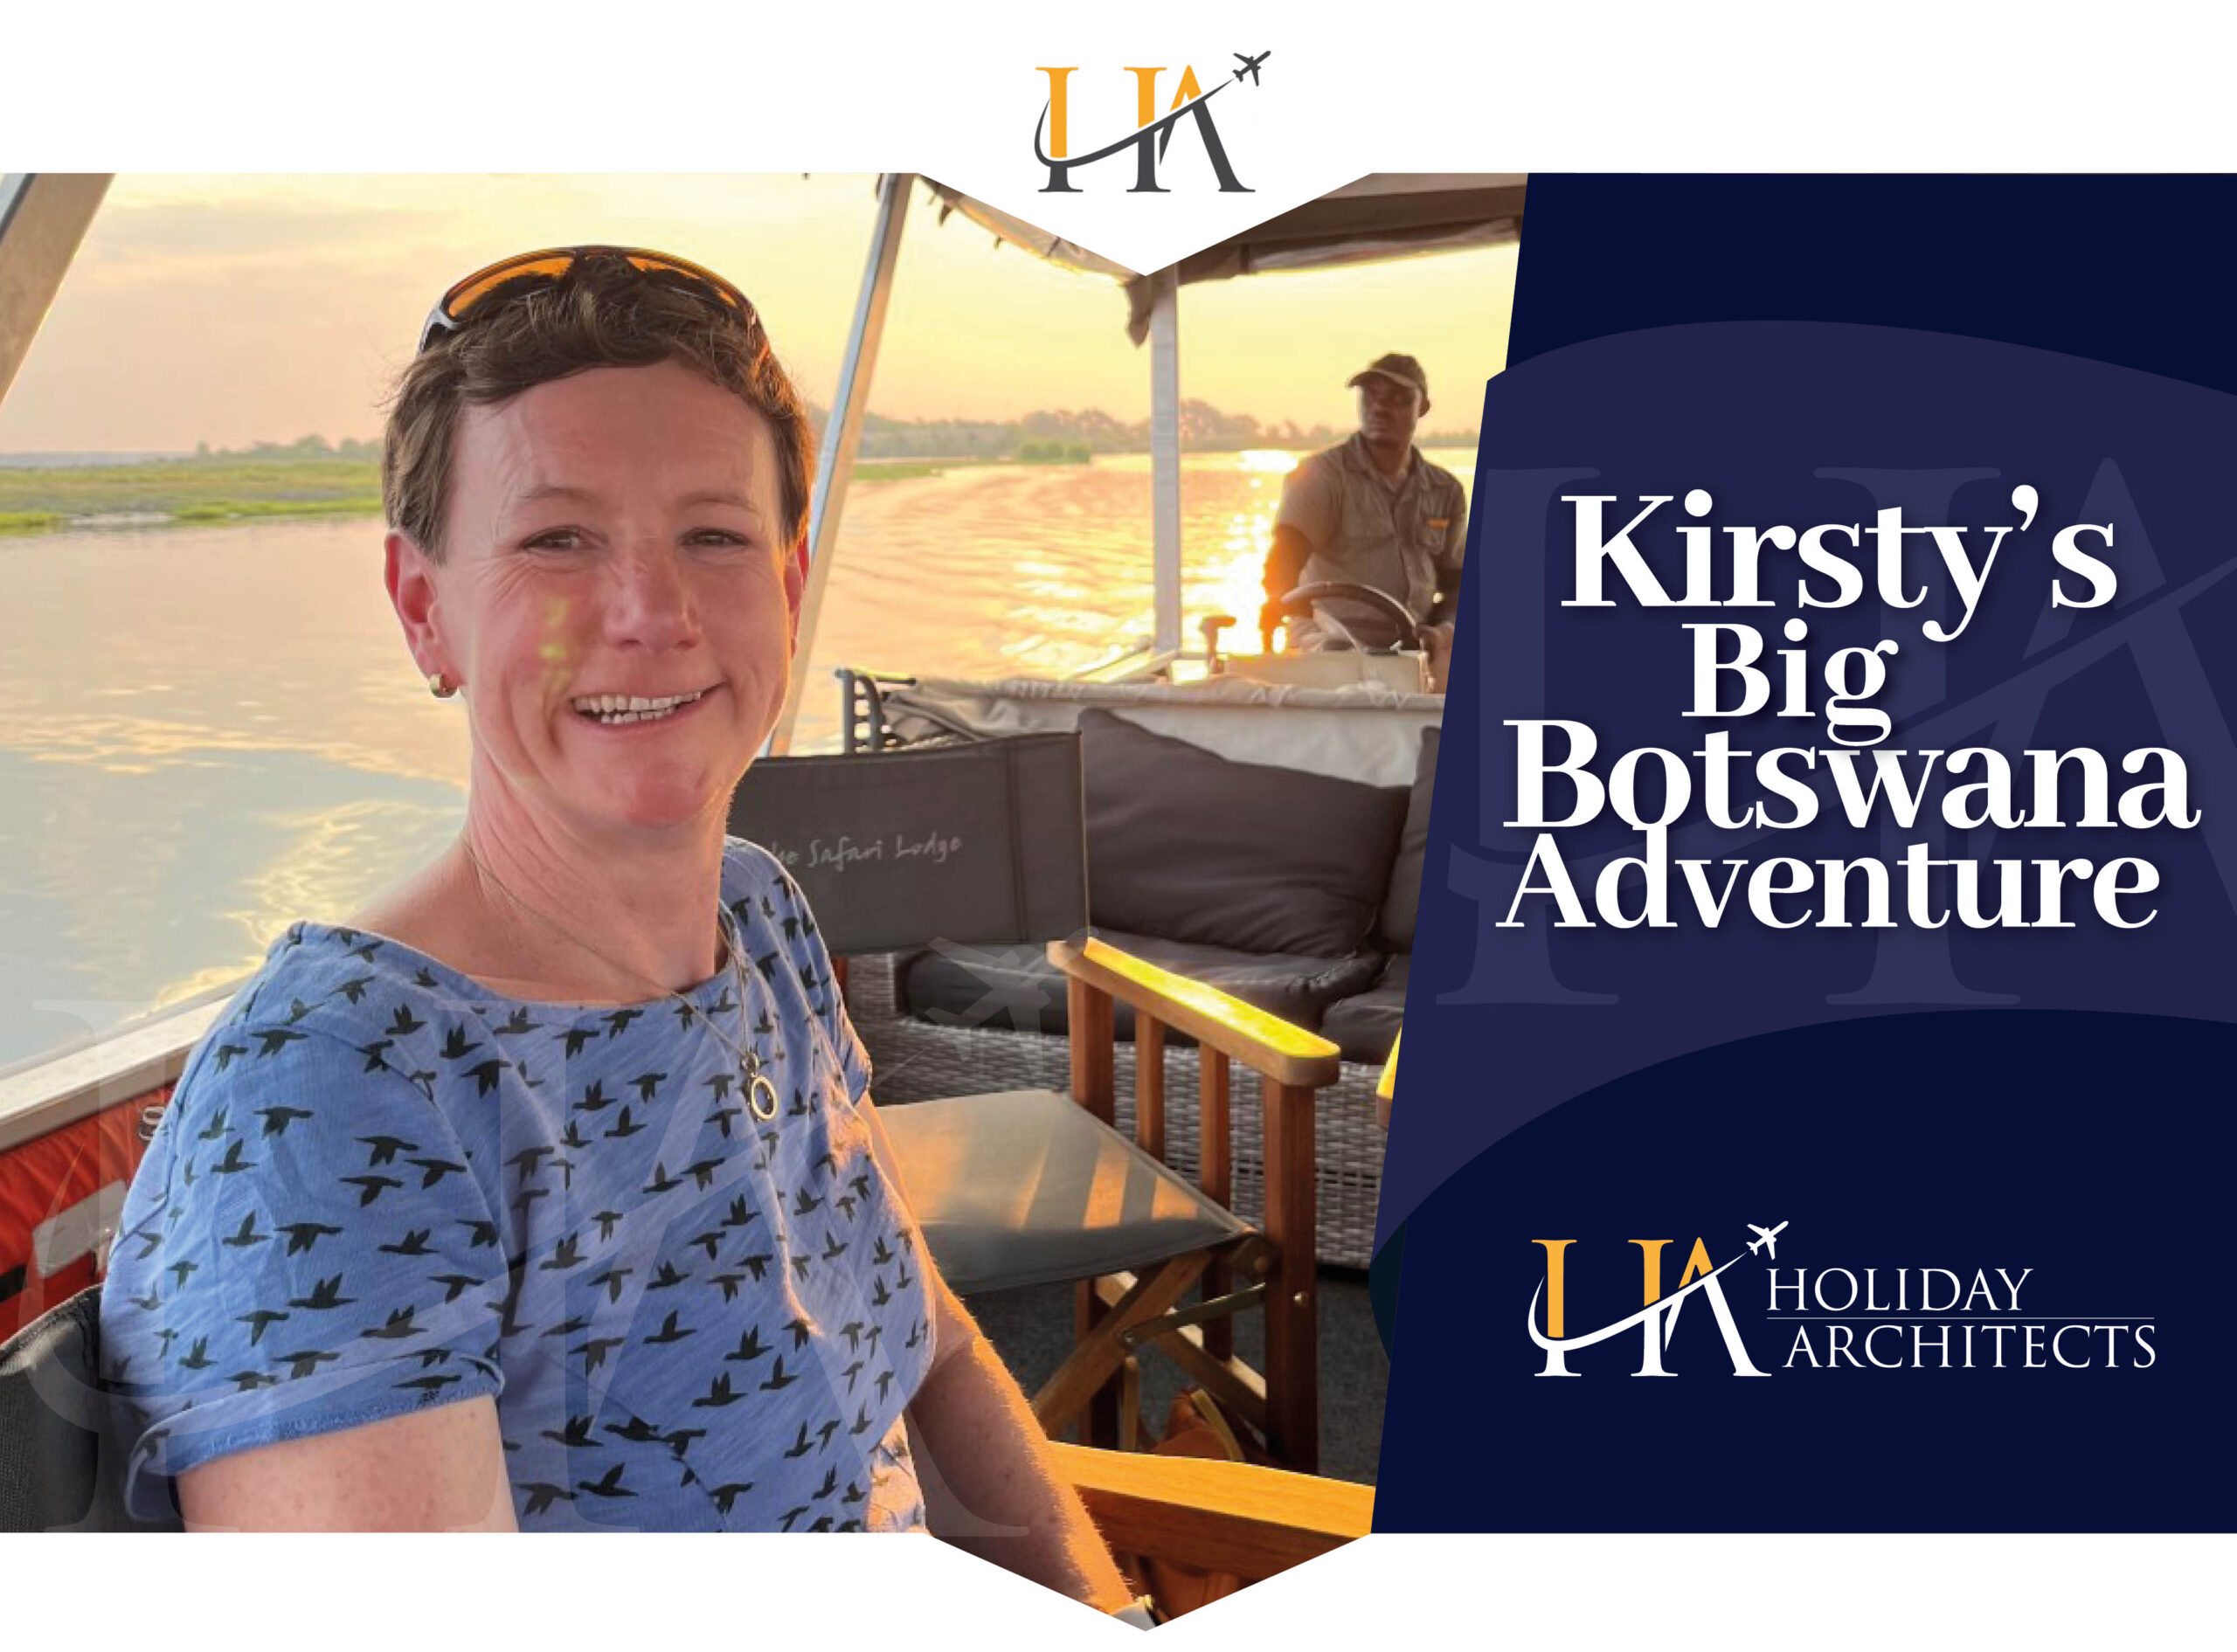 Kirsty Botswana adventure